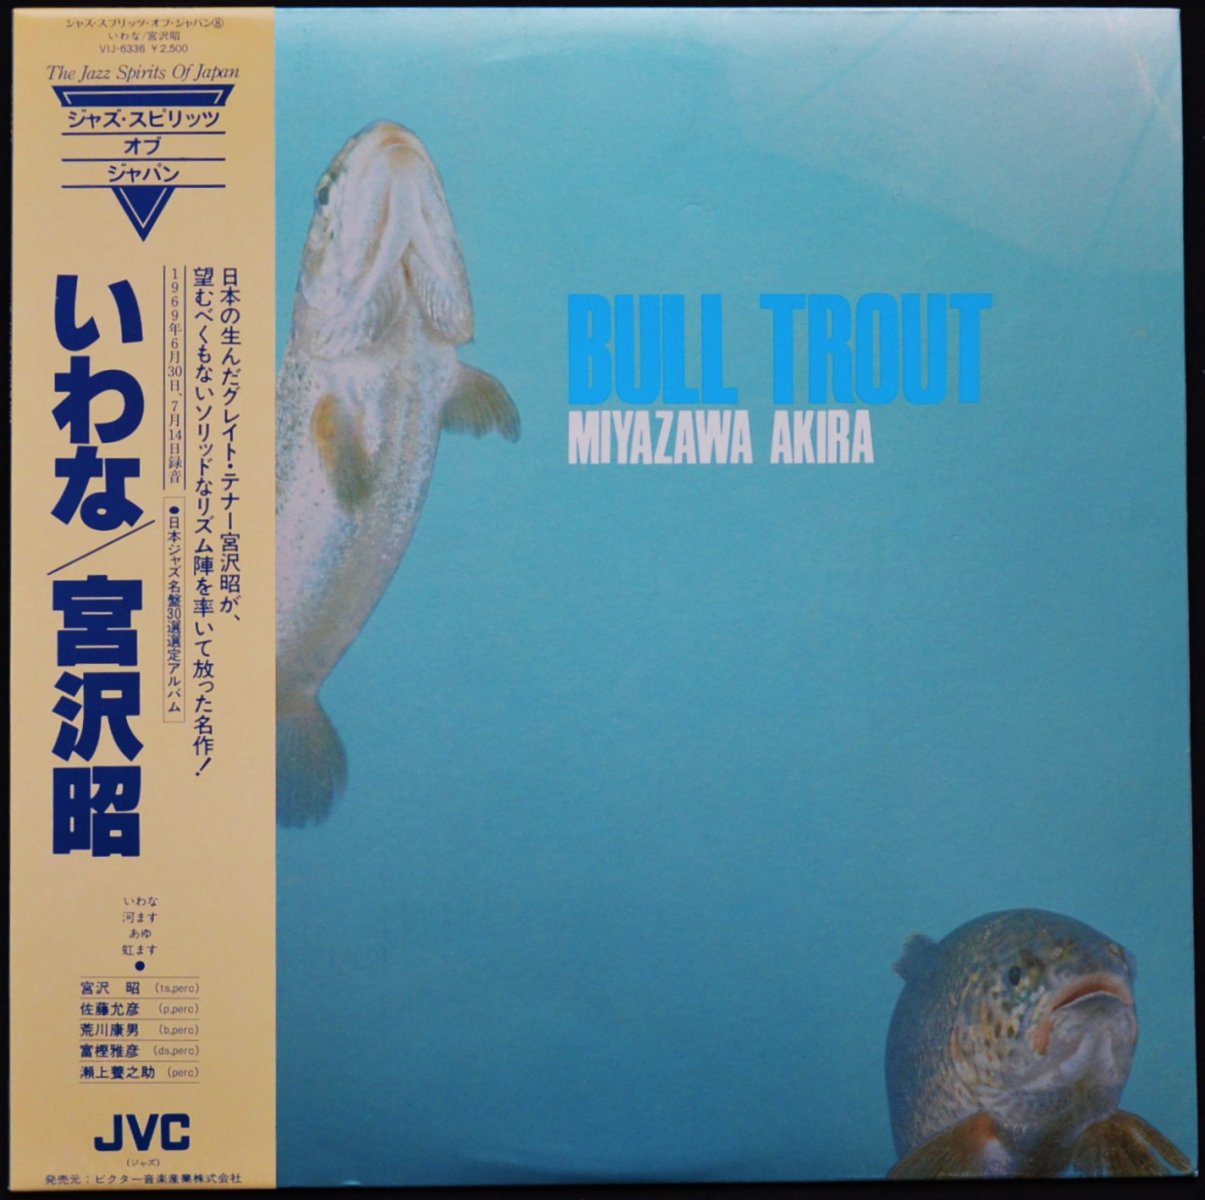 宮沢昭 AKIRA MIYAZAWA / いわな BULL TROUT (LP) - HIP TANK RECORDS